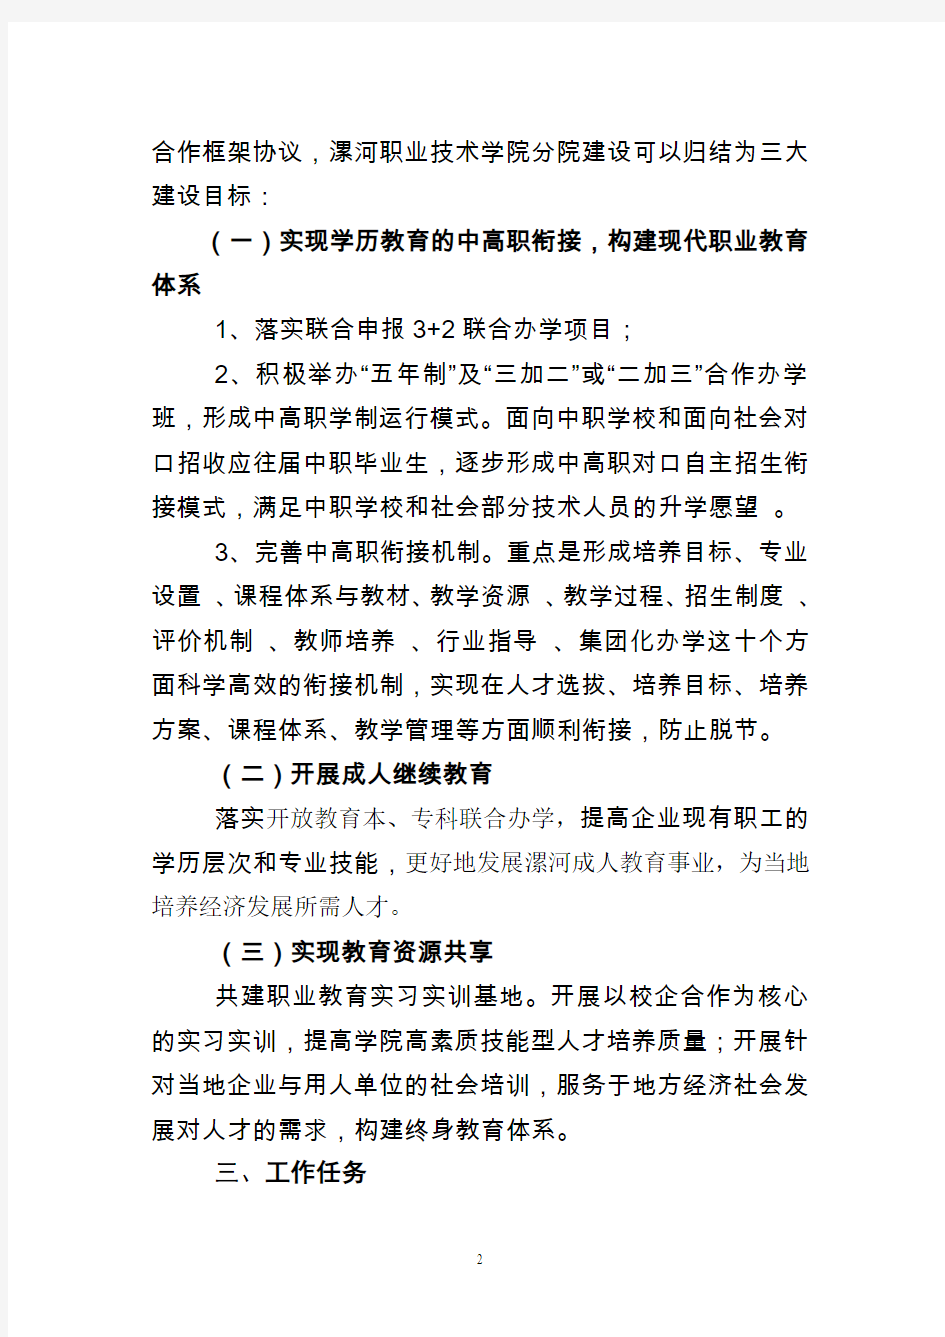 漯河职业技术学院分院建设方案(第三修改稿)